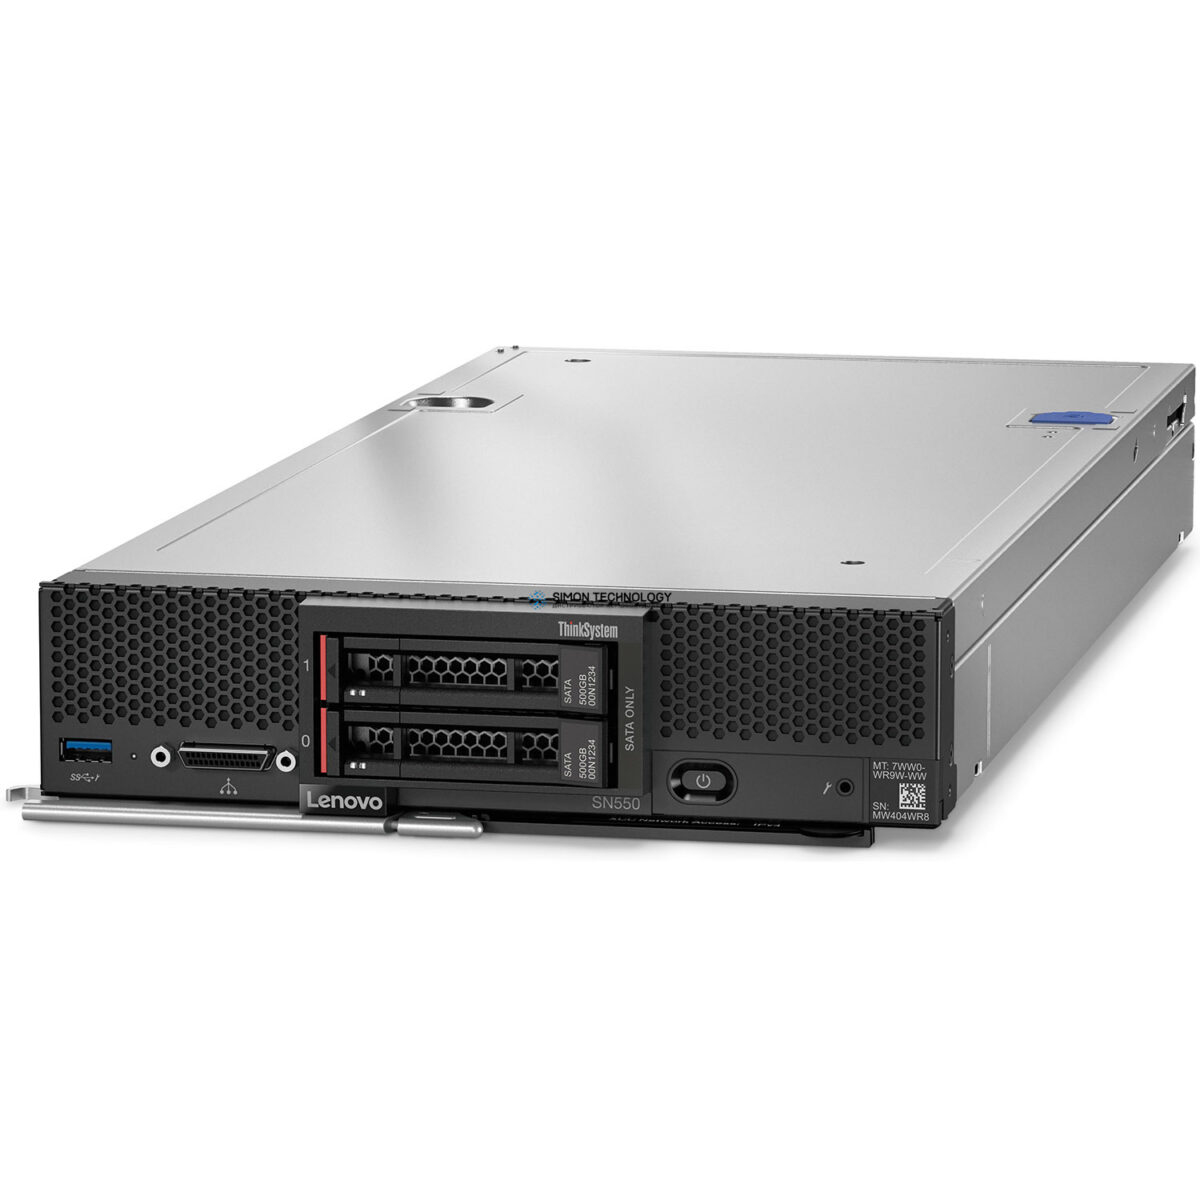 Сервер Lenovo SN550 Blade Server Configure To Order (01GV960)